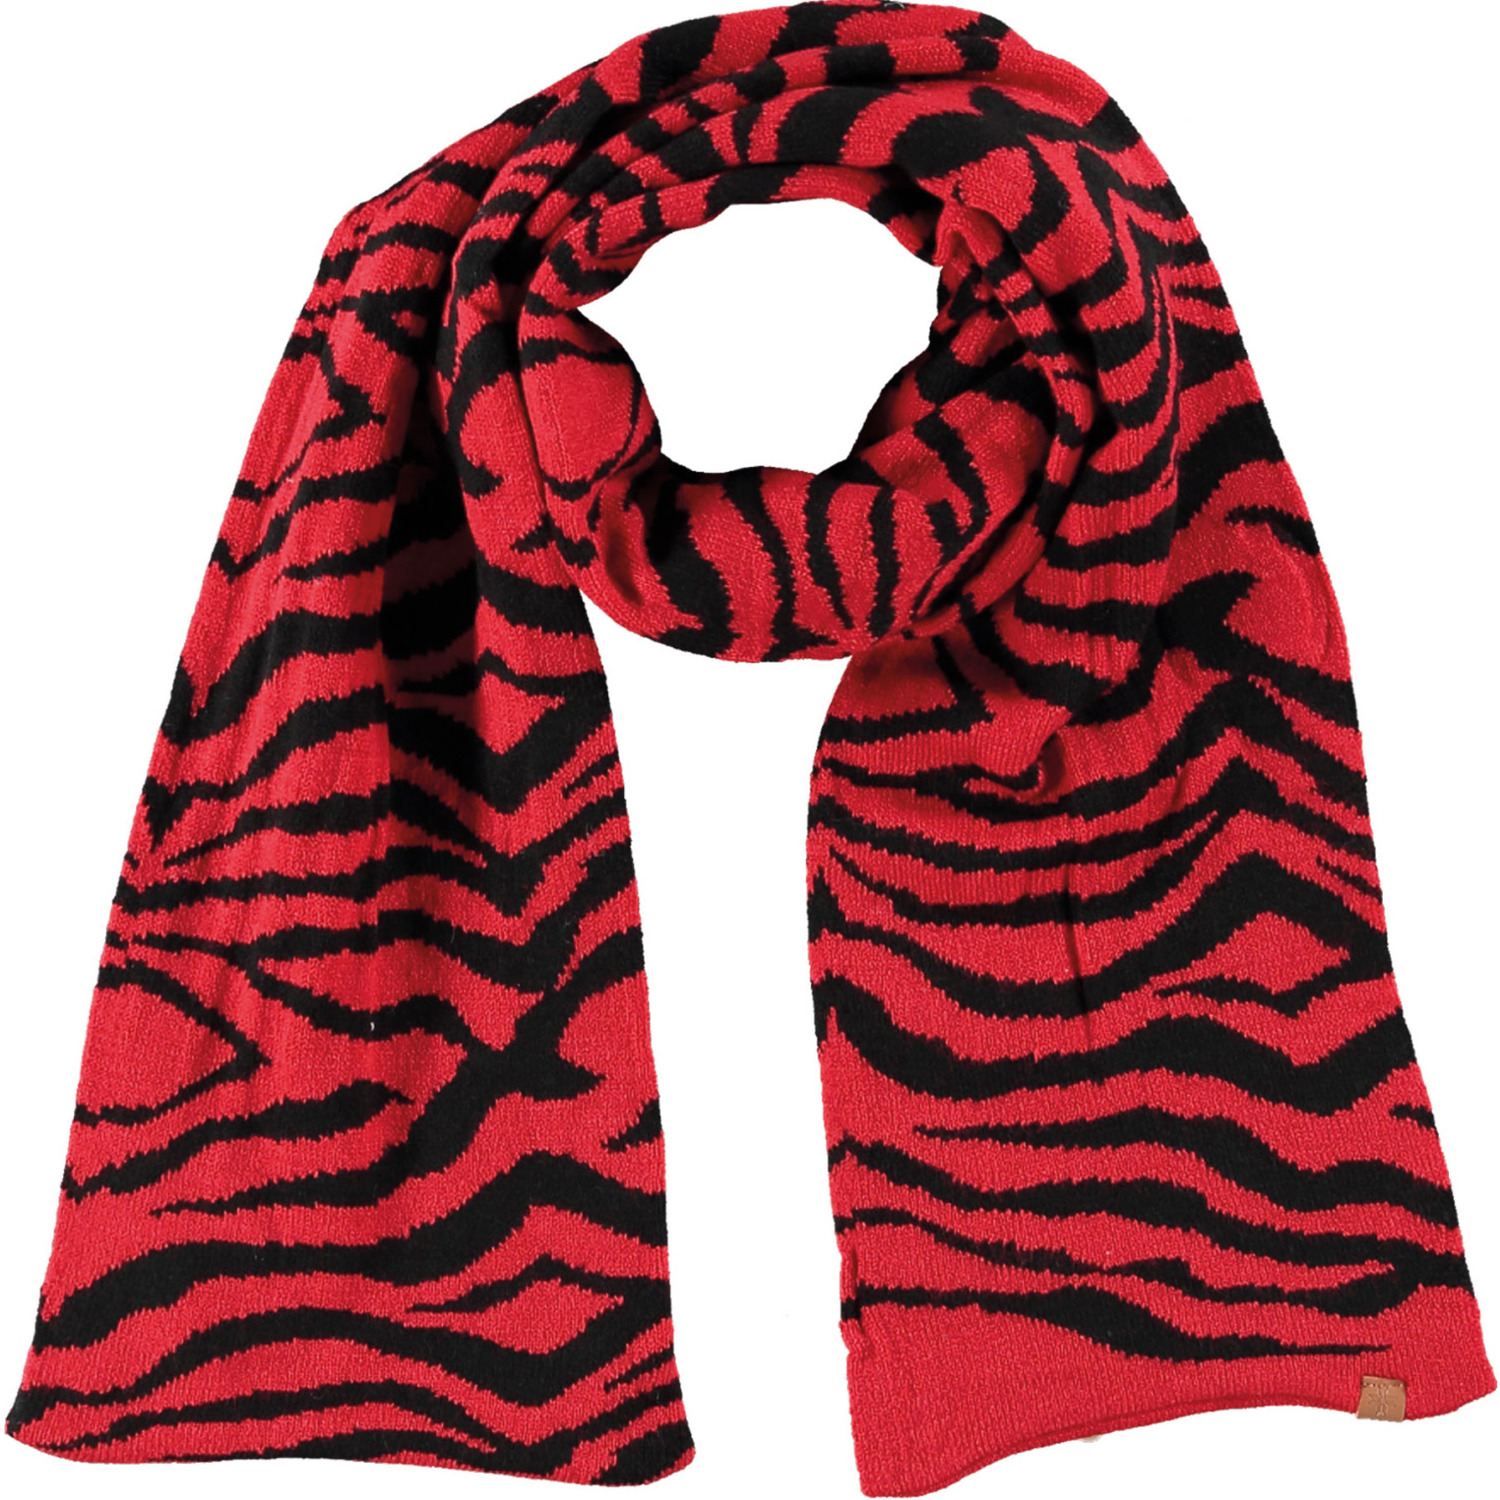 Tijger/zebra sjaal/shawl rood/zwart gestreept voor meisjes